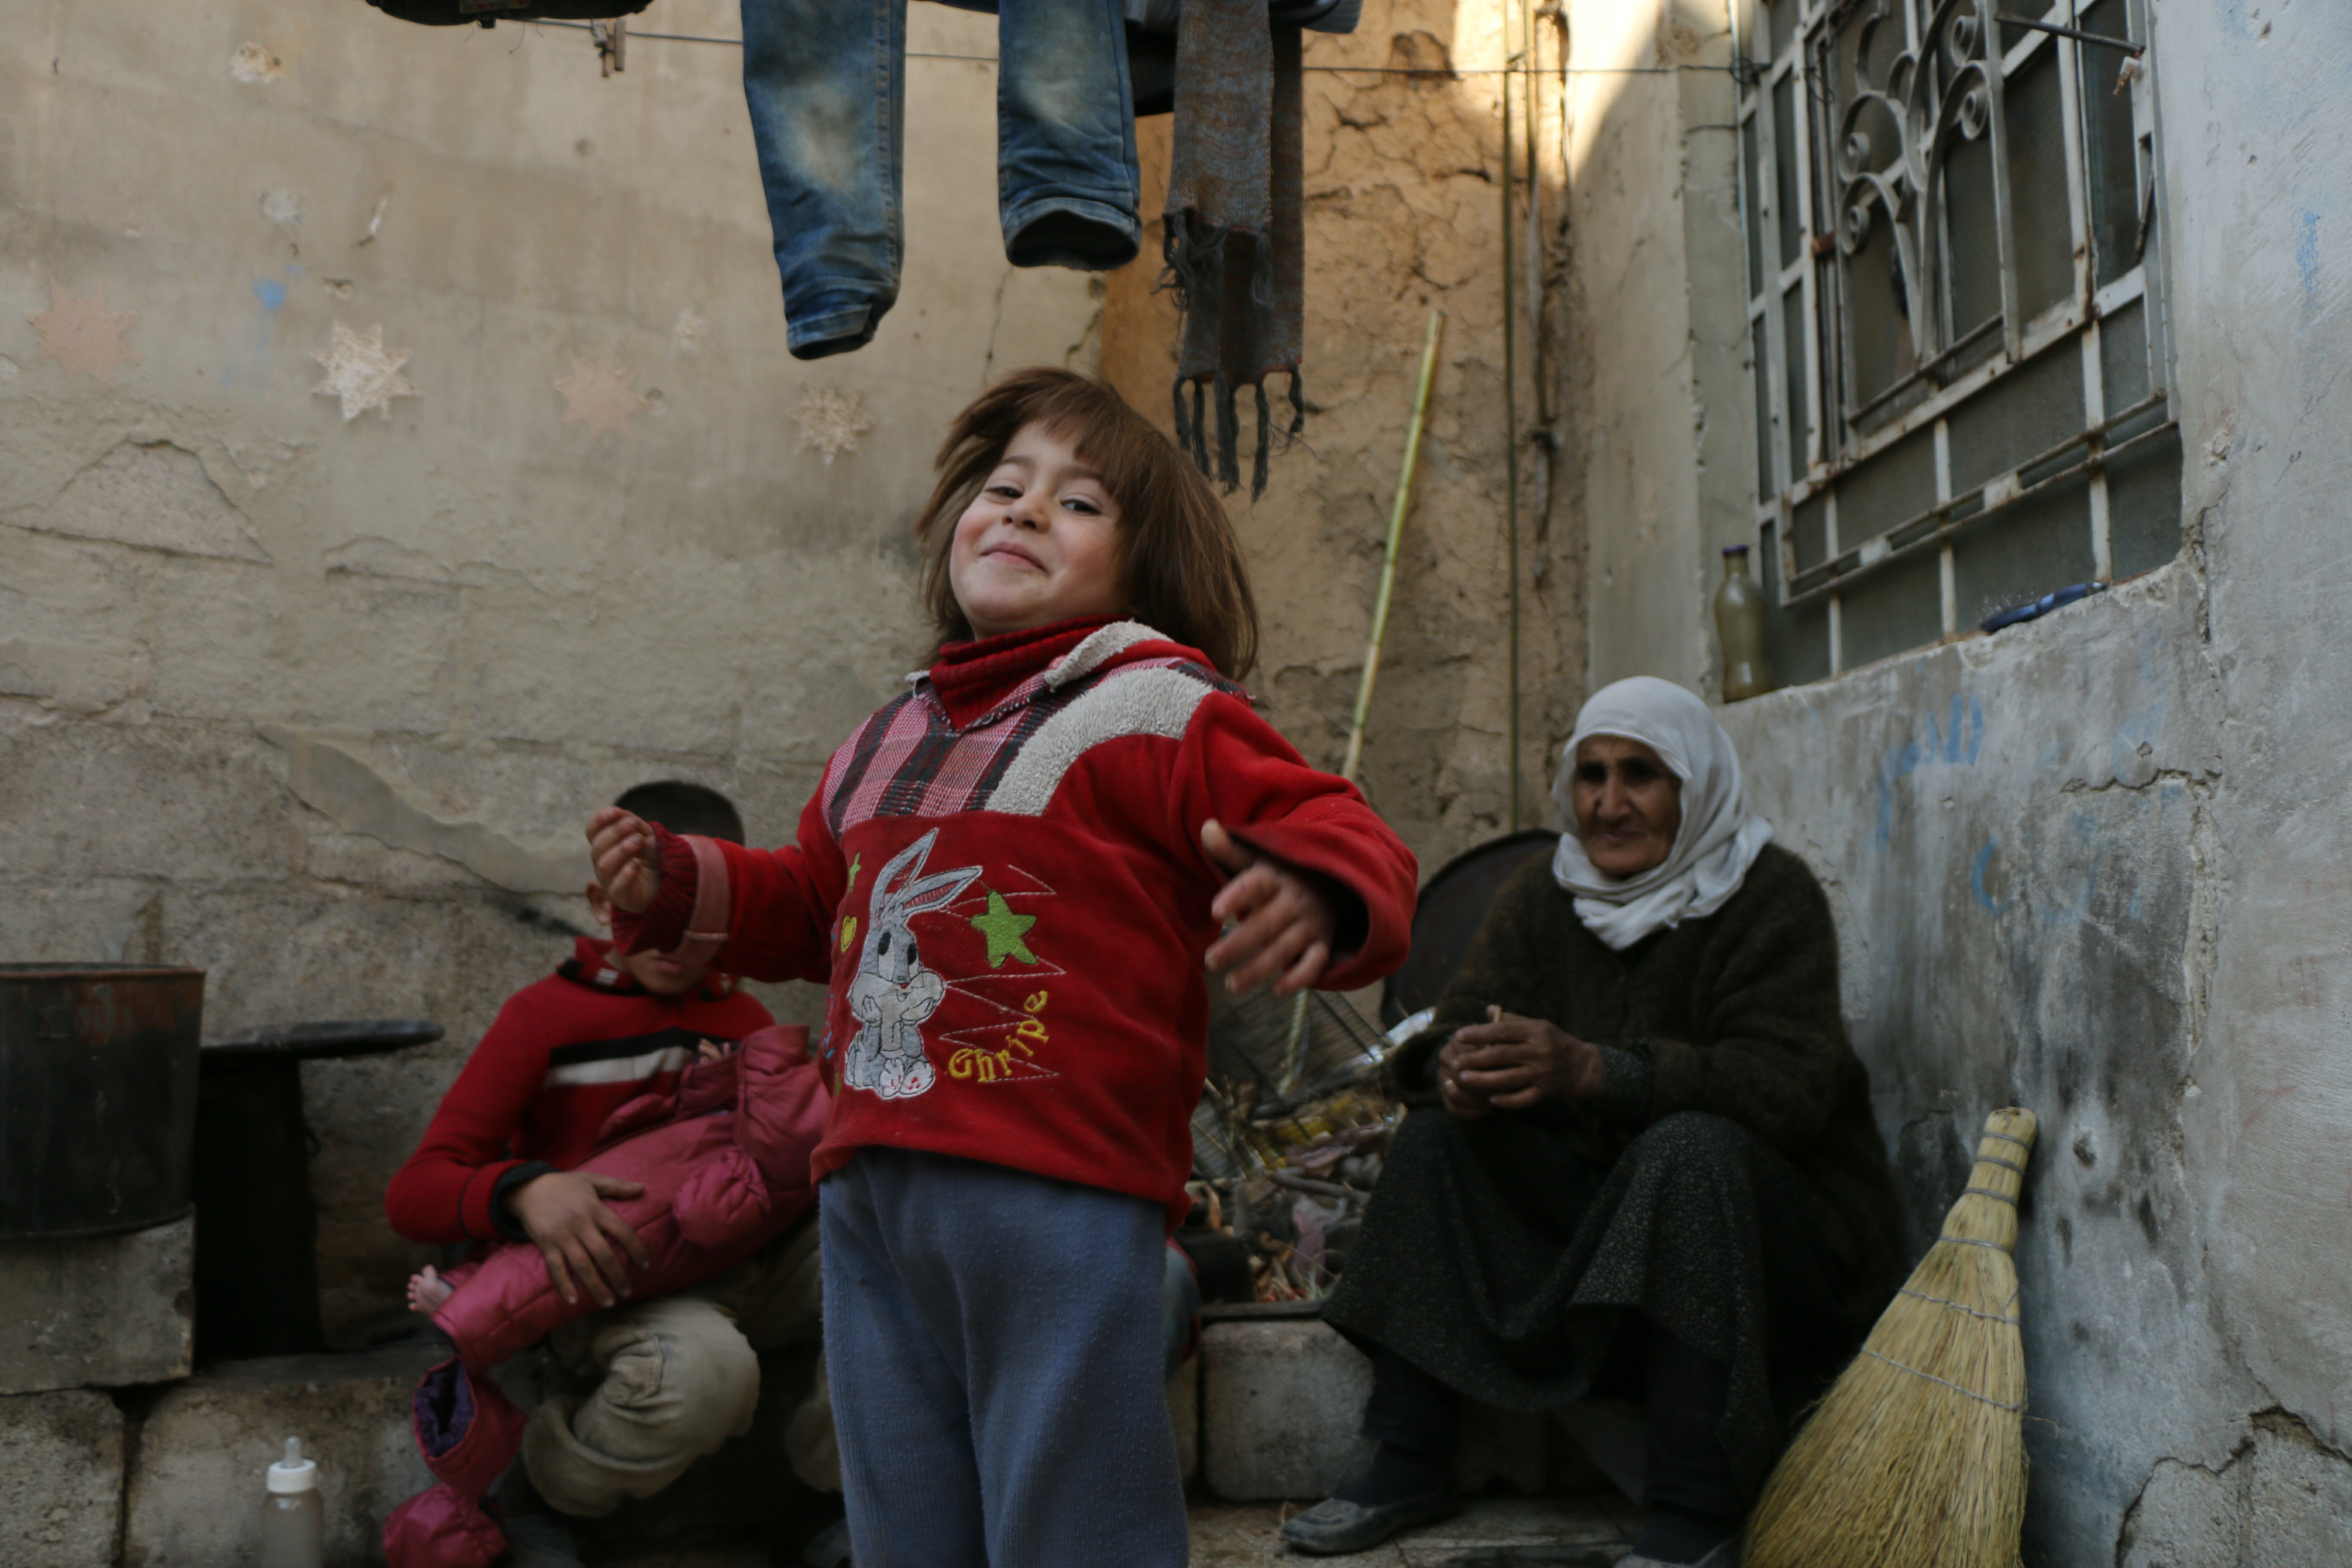 حكاية أسرة سورية في الغوطة: مأساة رضيع كُسرت جمجمته.. "كريم" وإخوته فقدوا حنان الأم (صور)